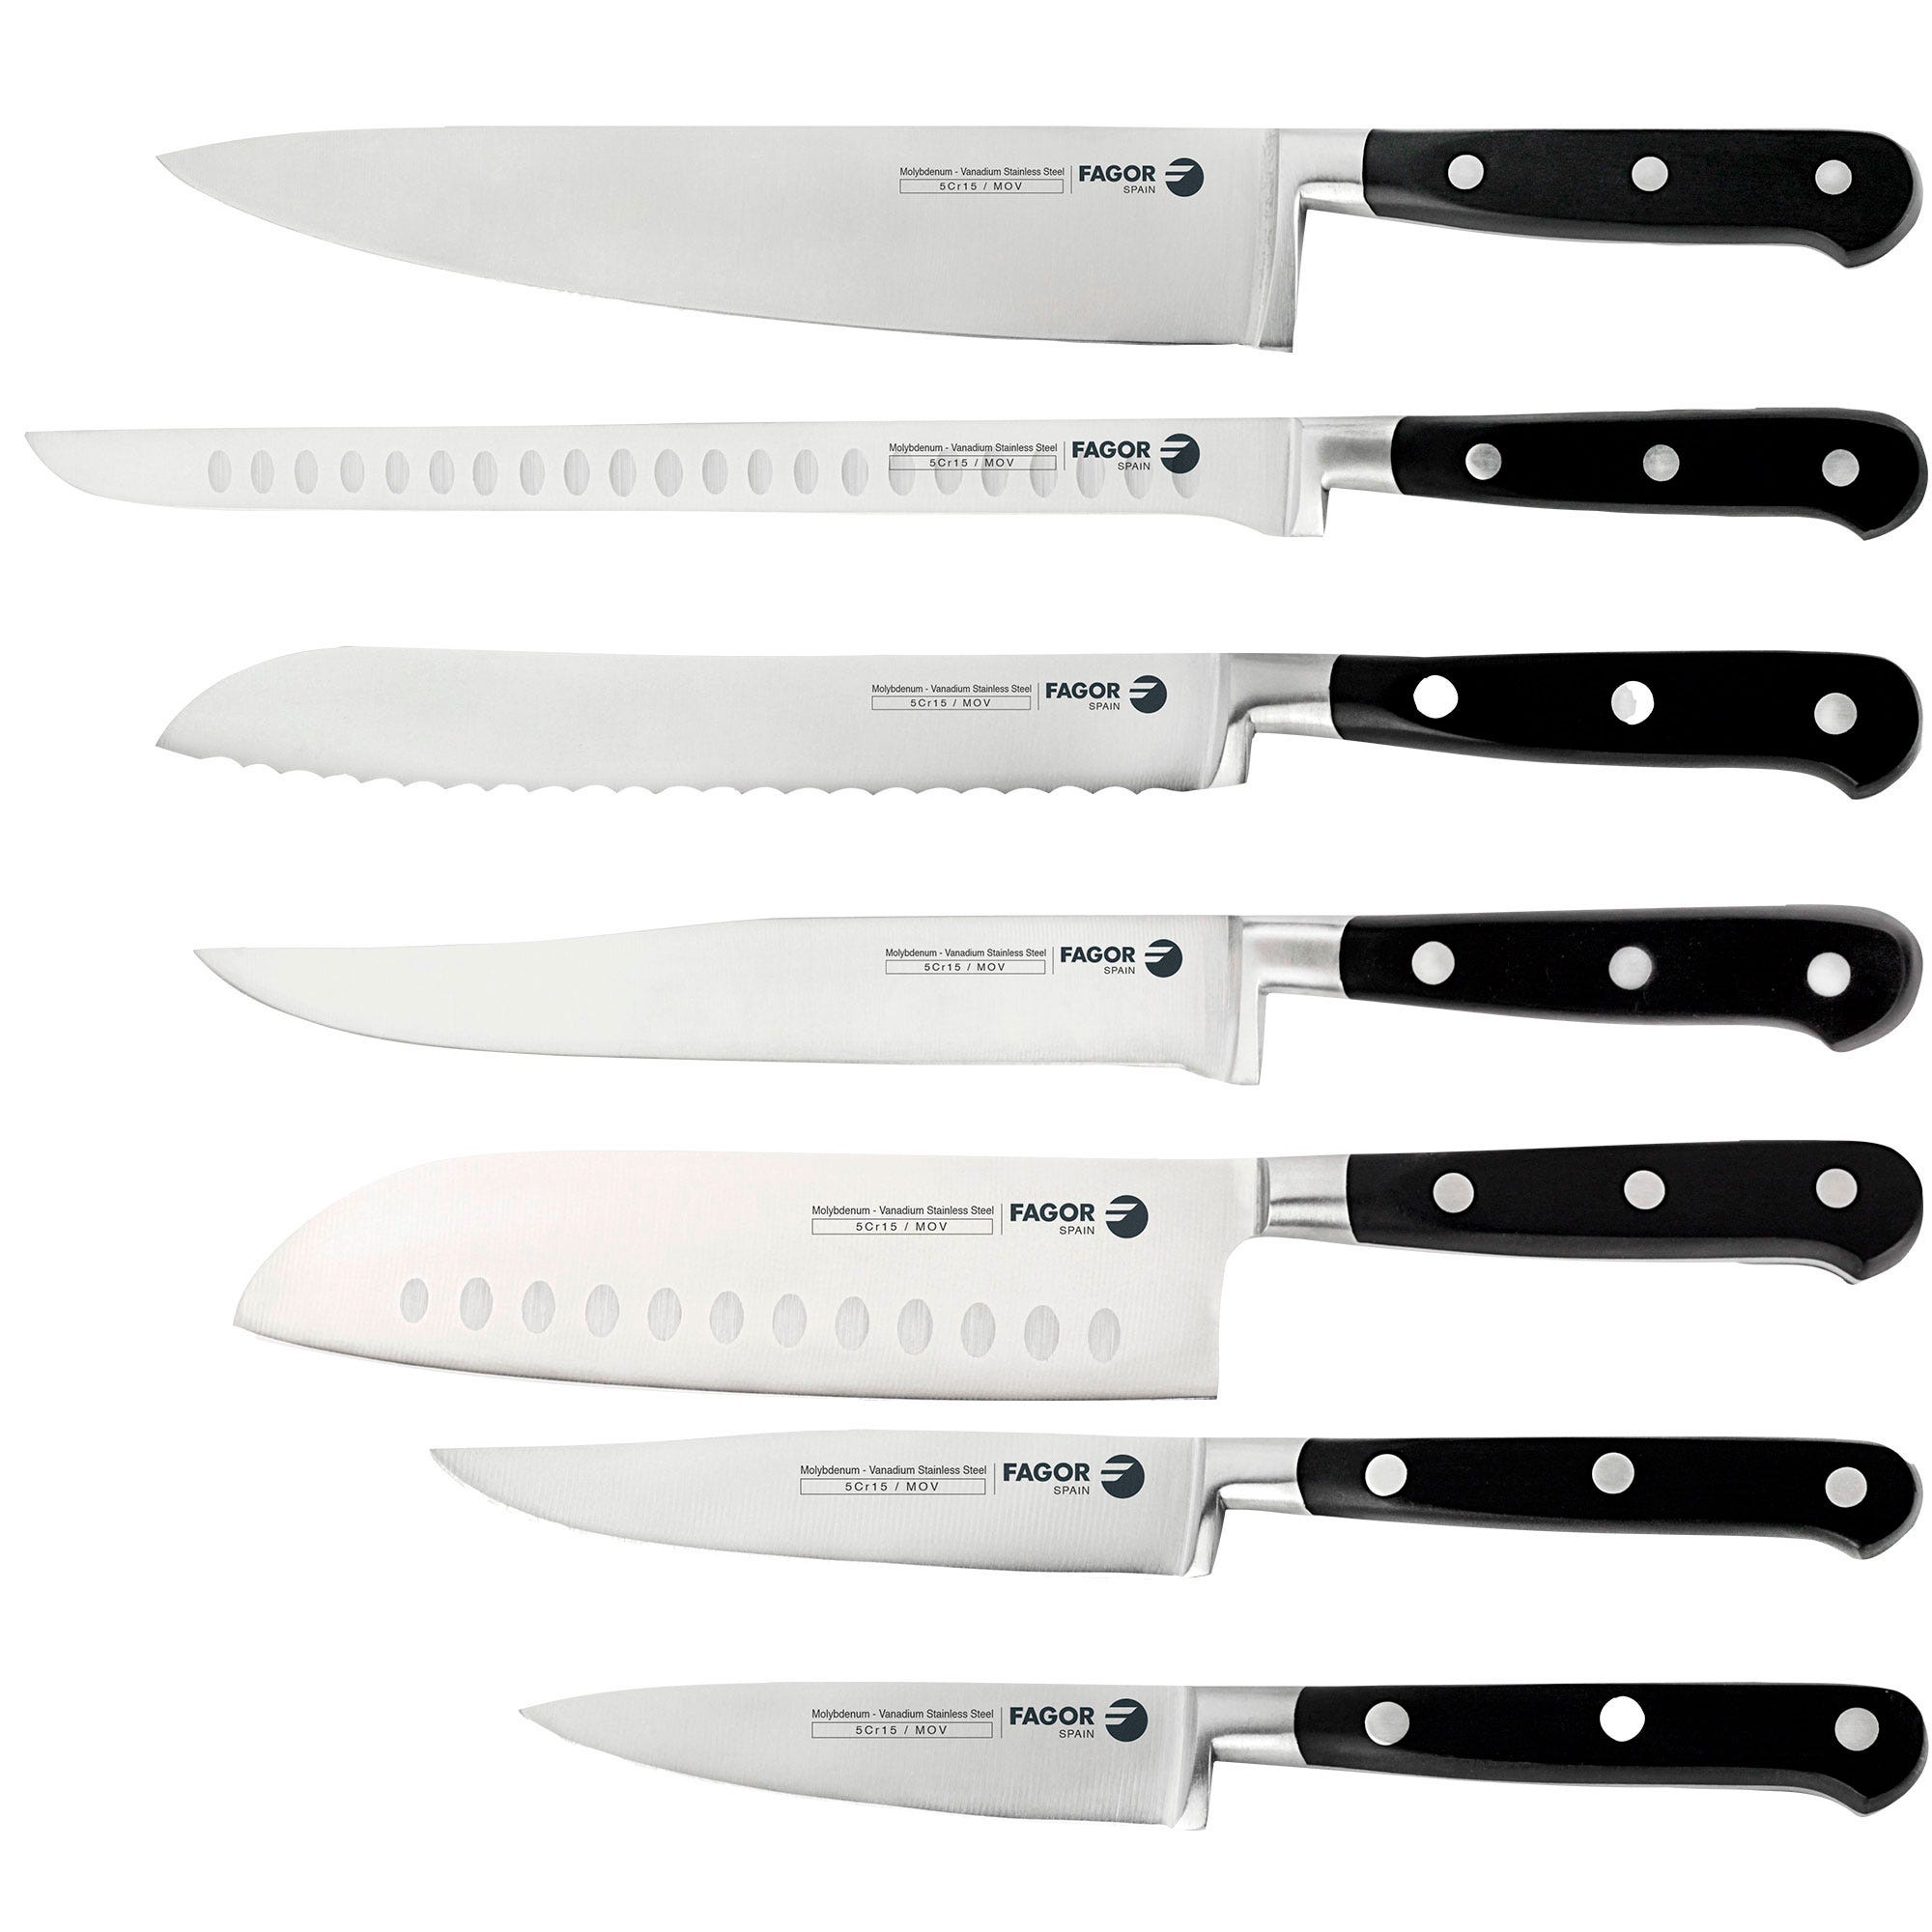 ARCOS Juego de cuchillos de cocina forjados de 3 piezas. Cuchillos Peeler,  Chef y Santoku de acero inoxidable y mango ergonómico de polipropileno para